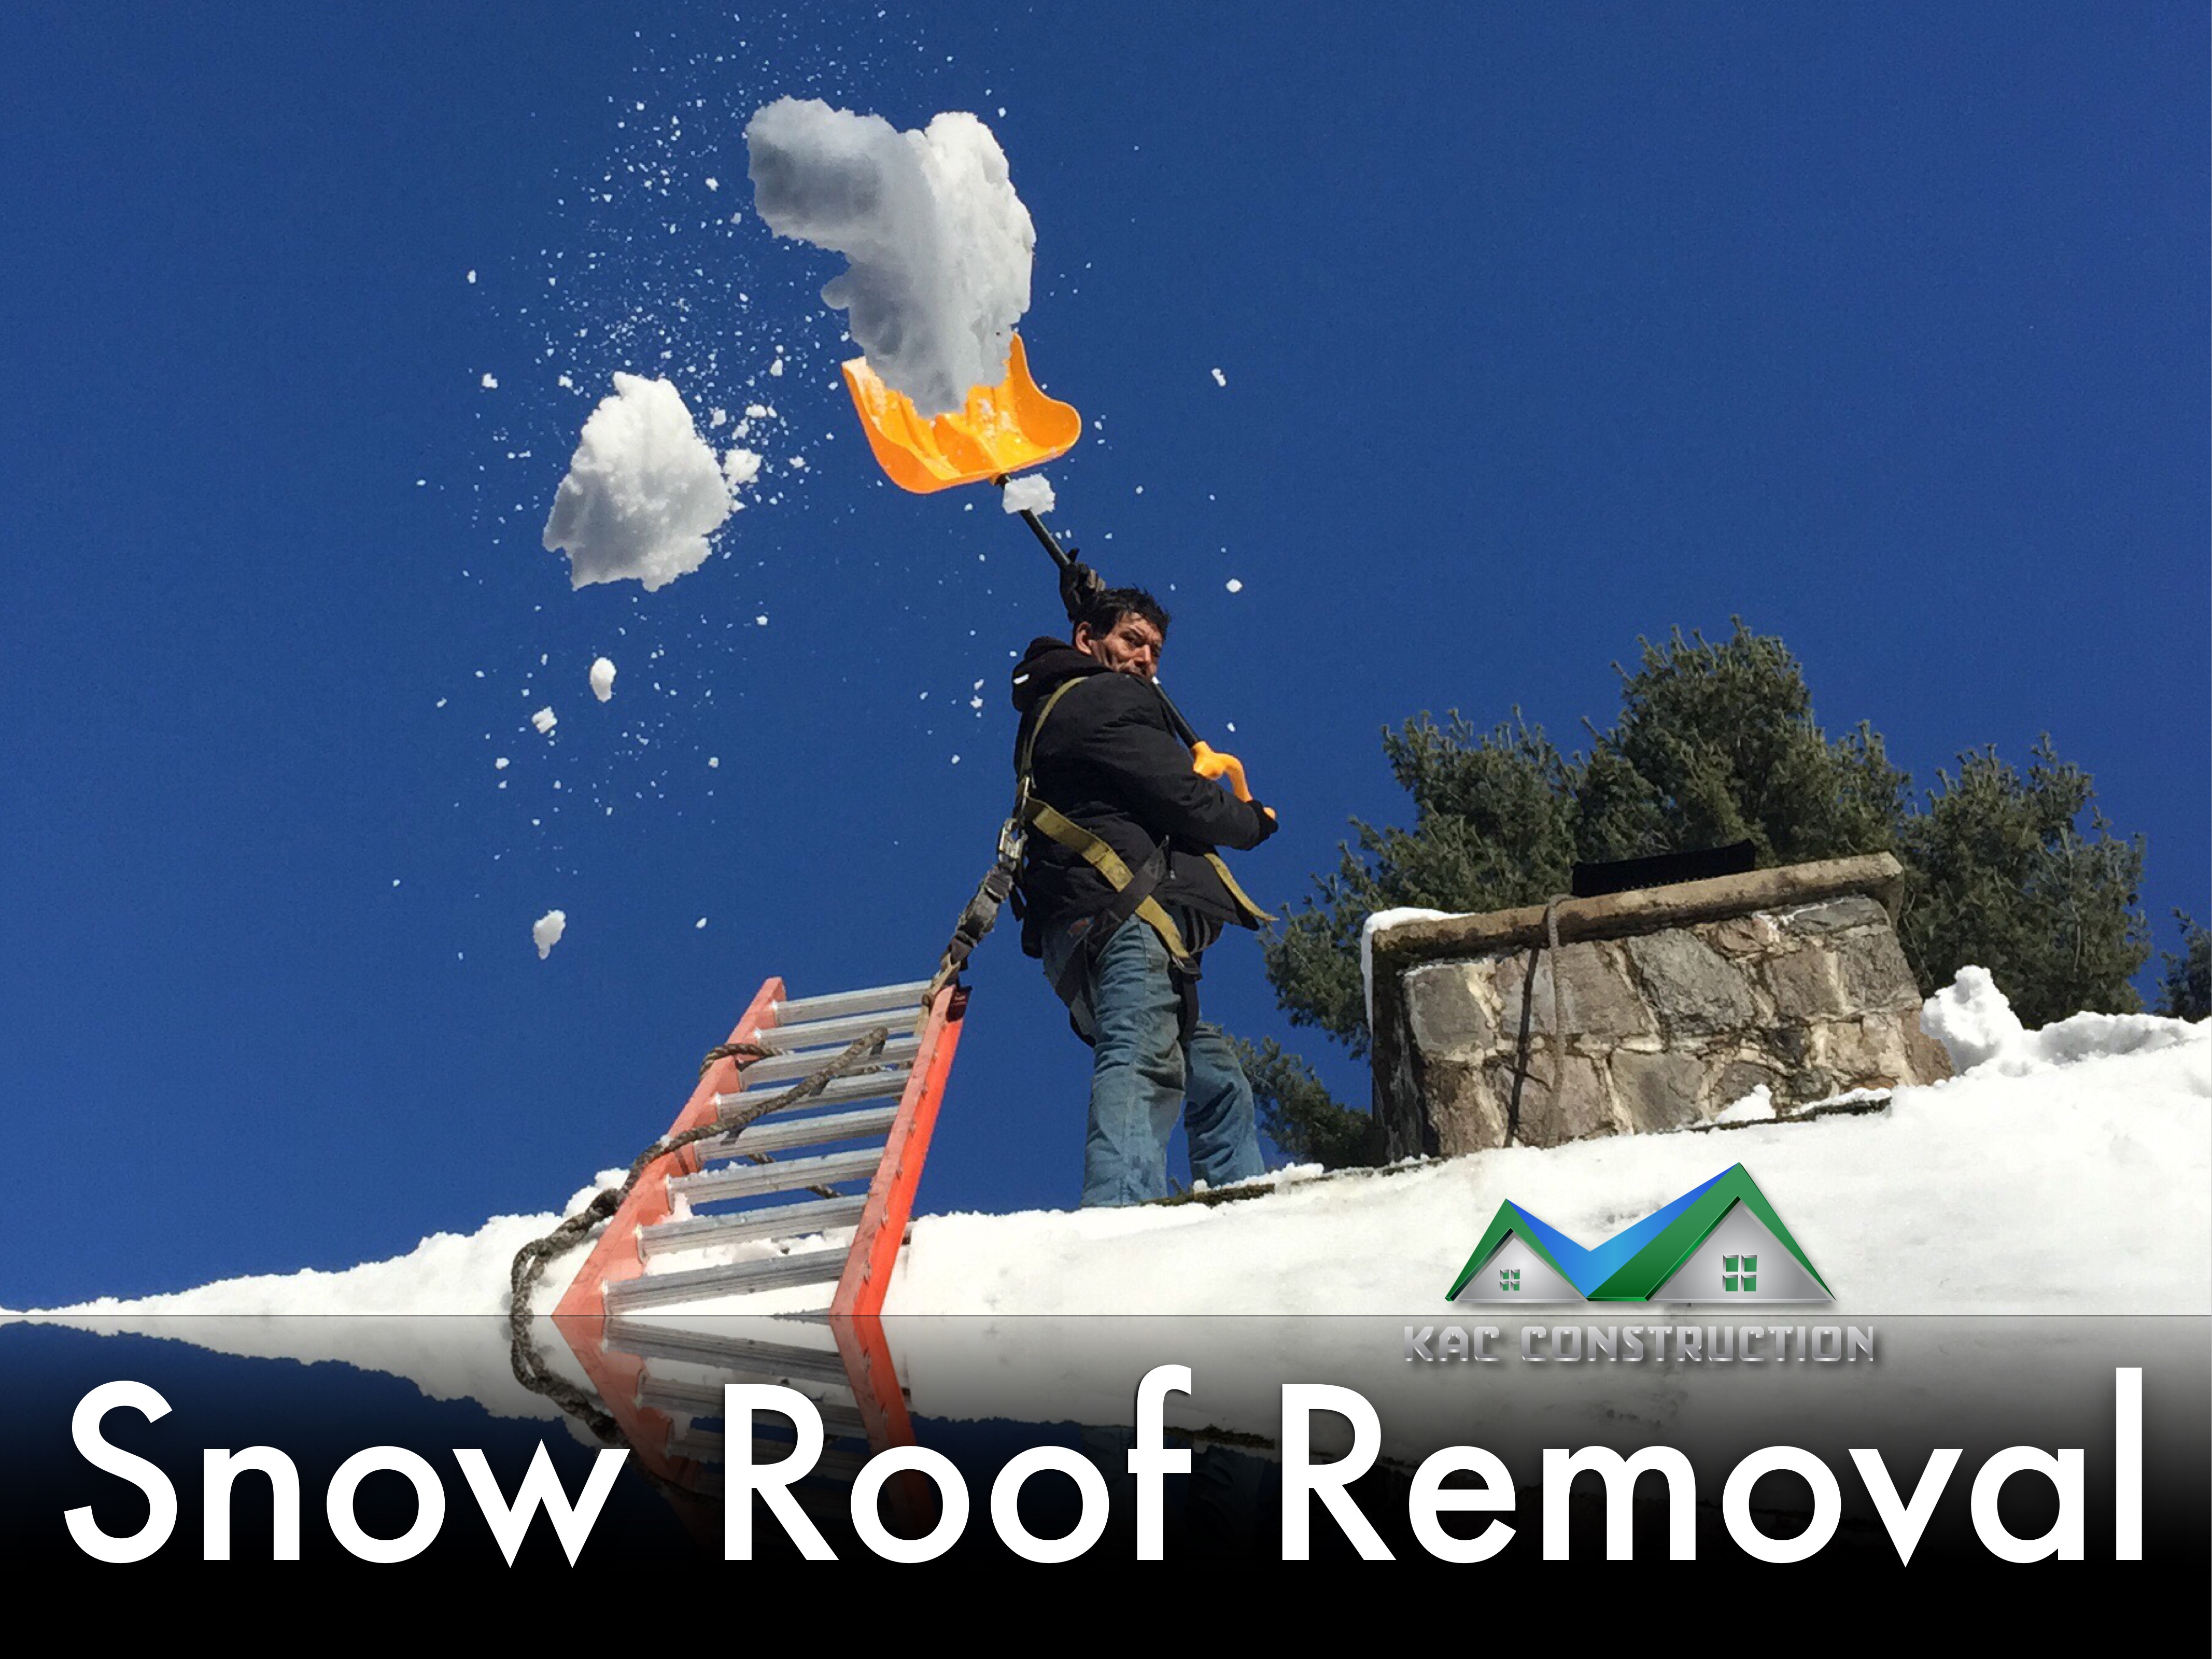 snow roof removal, snow roof removal ct, snow roof removal new london, snow roof removal in ct, snow roof removal in new london